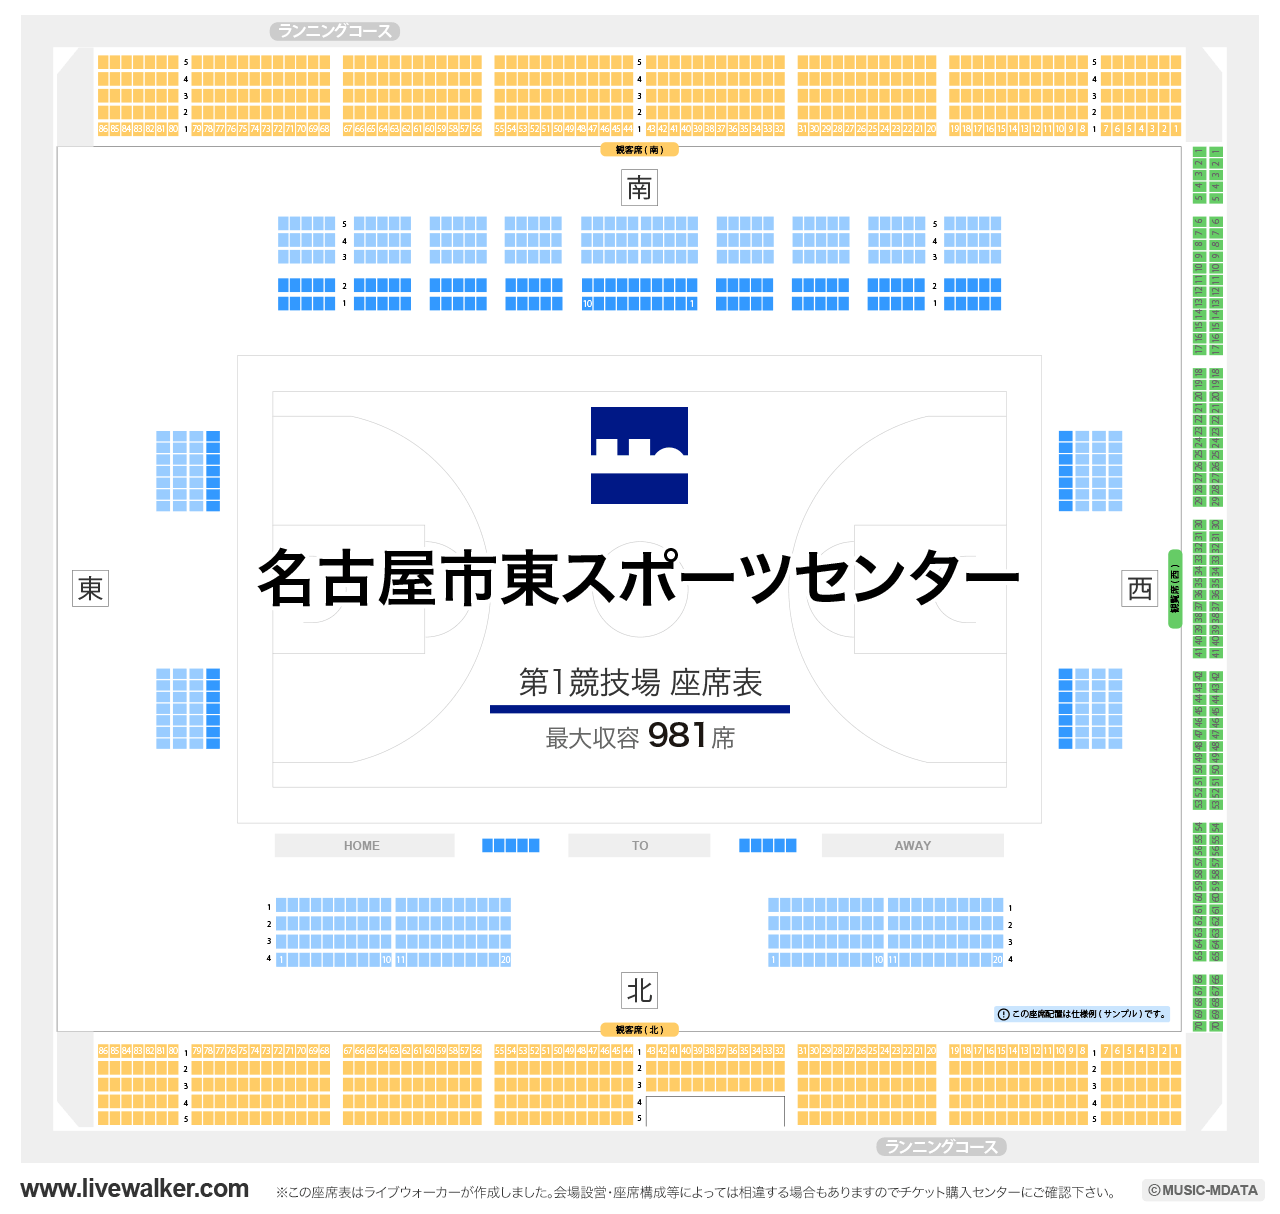 名古屋市東スポーツセンター第1競技場の座席表